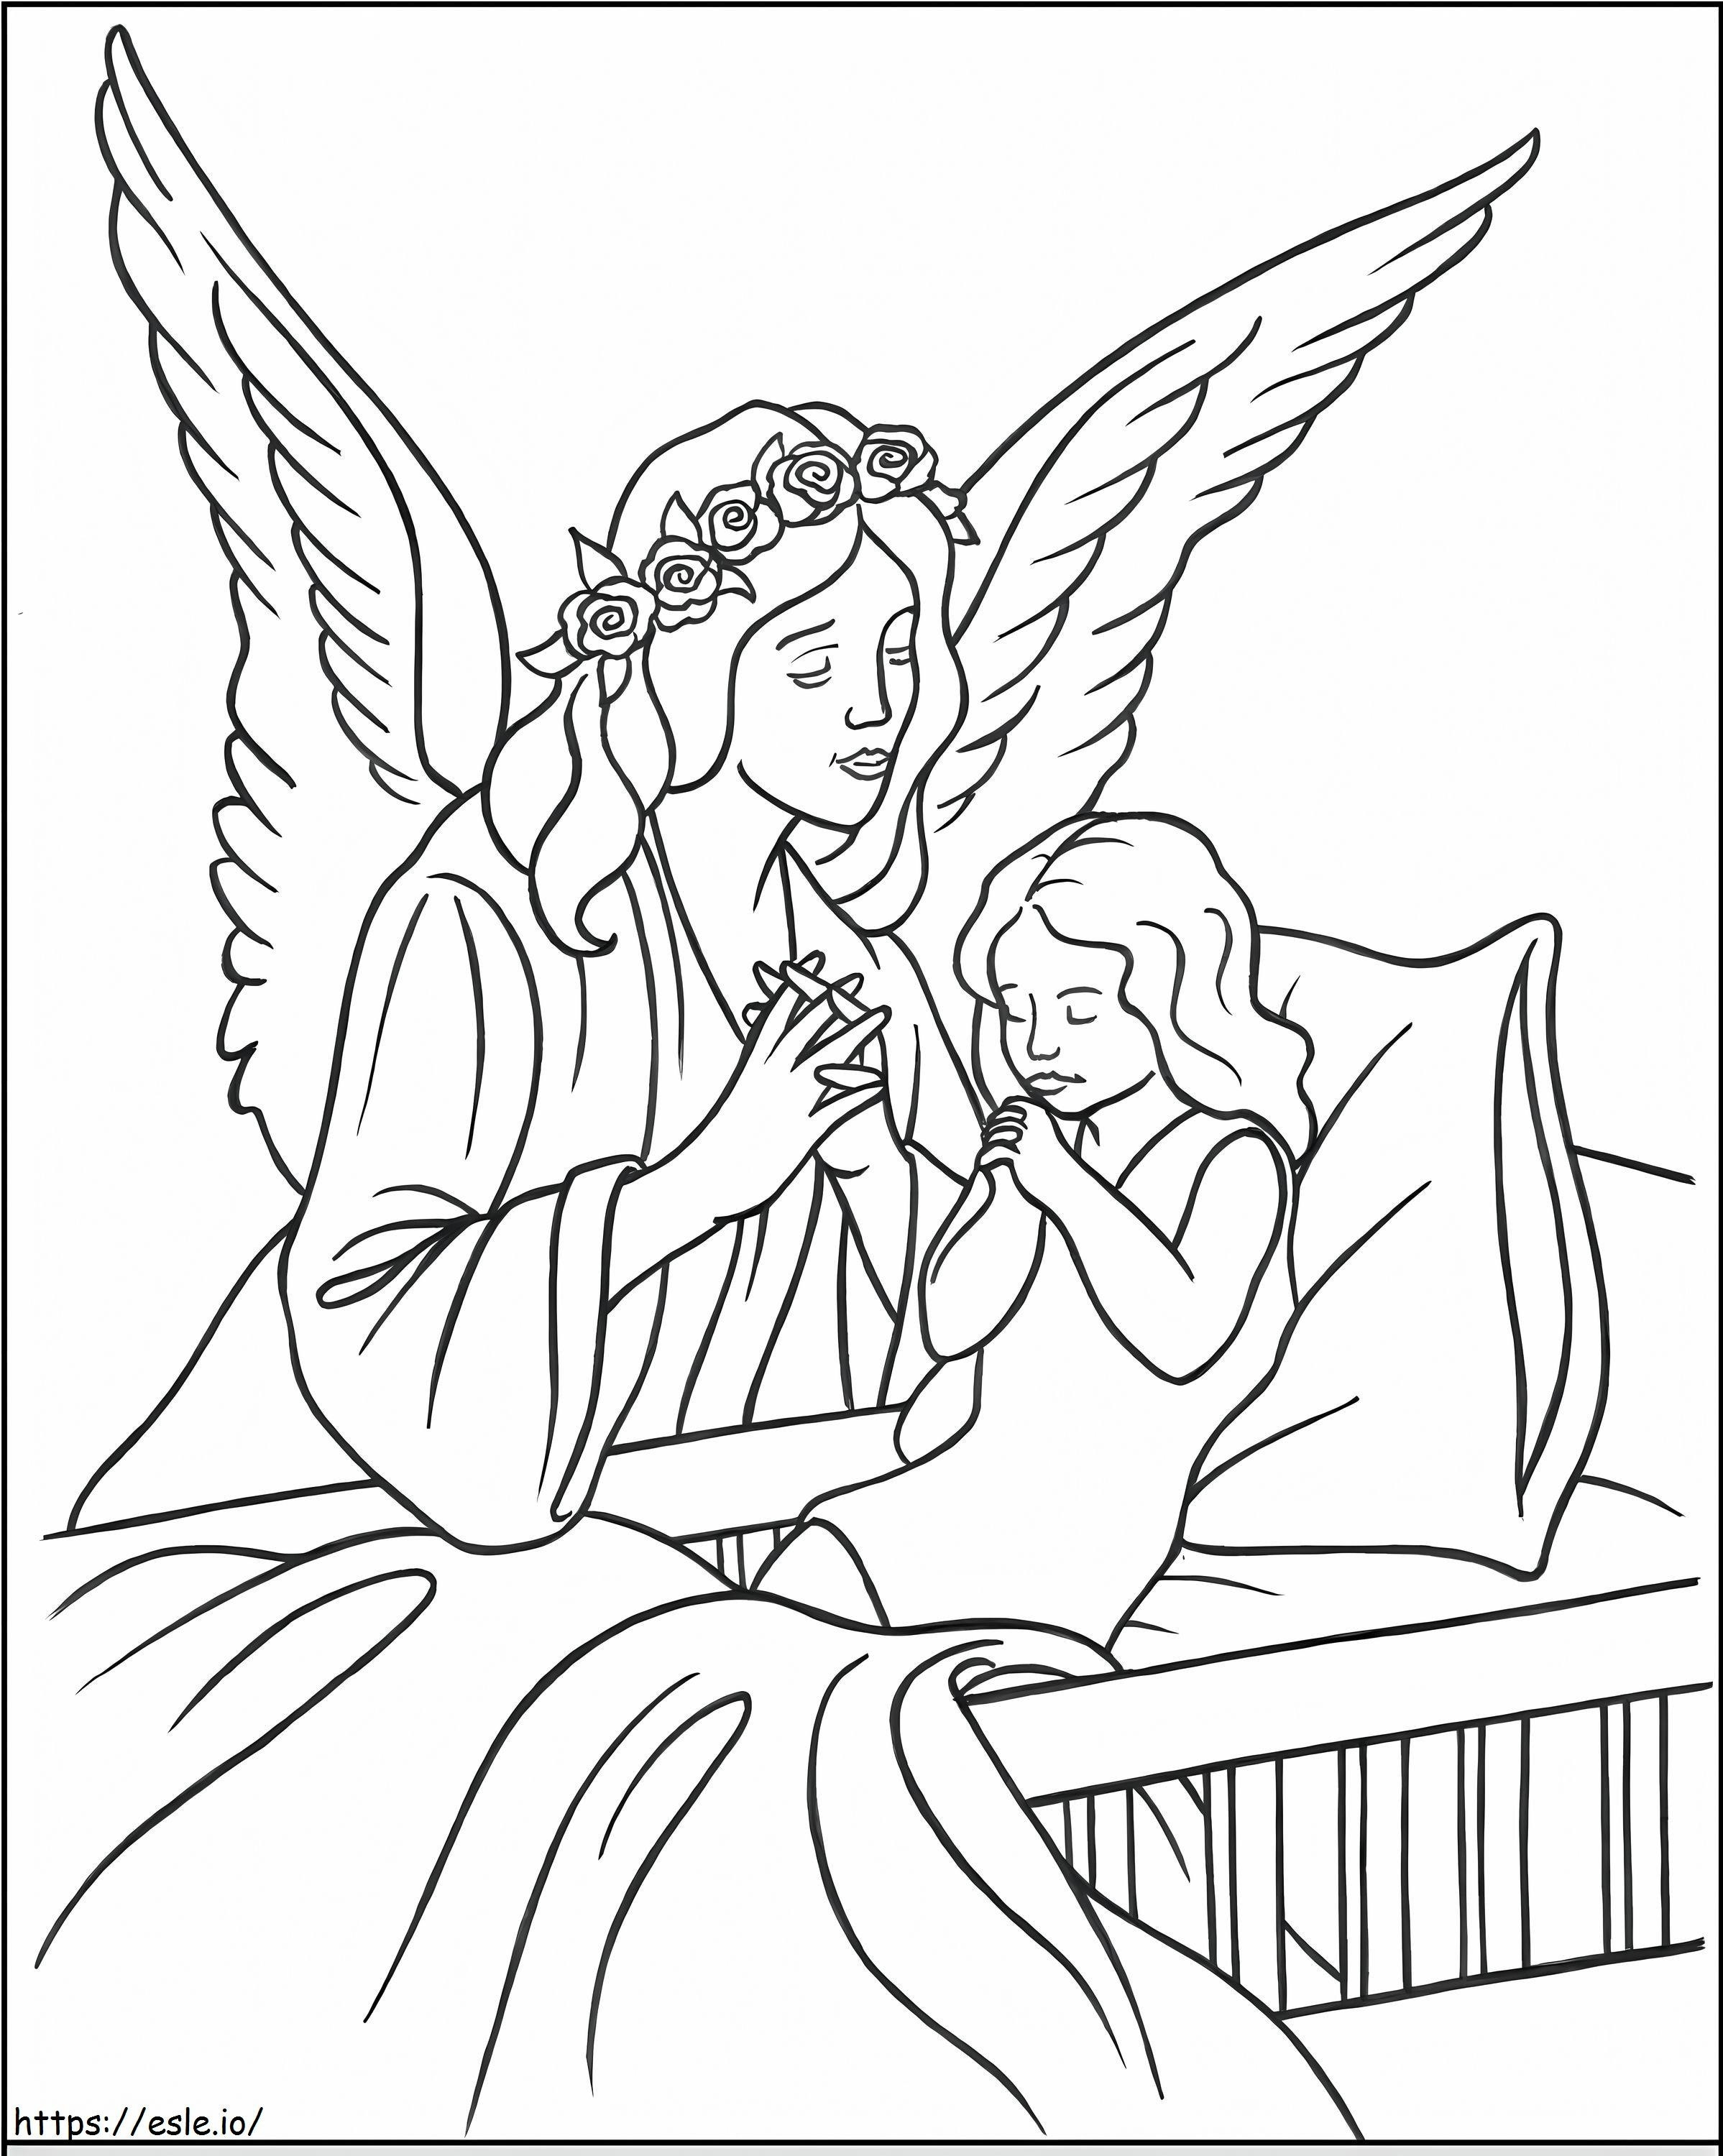 Engel Met Kind kleurplaat kleurplaat